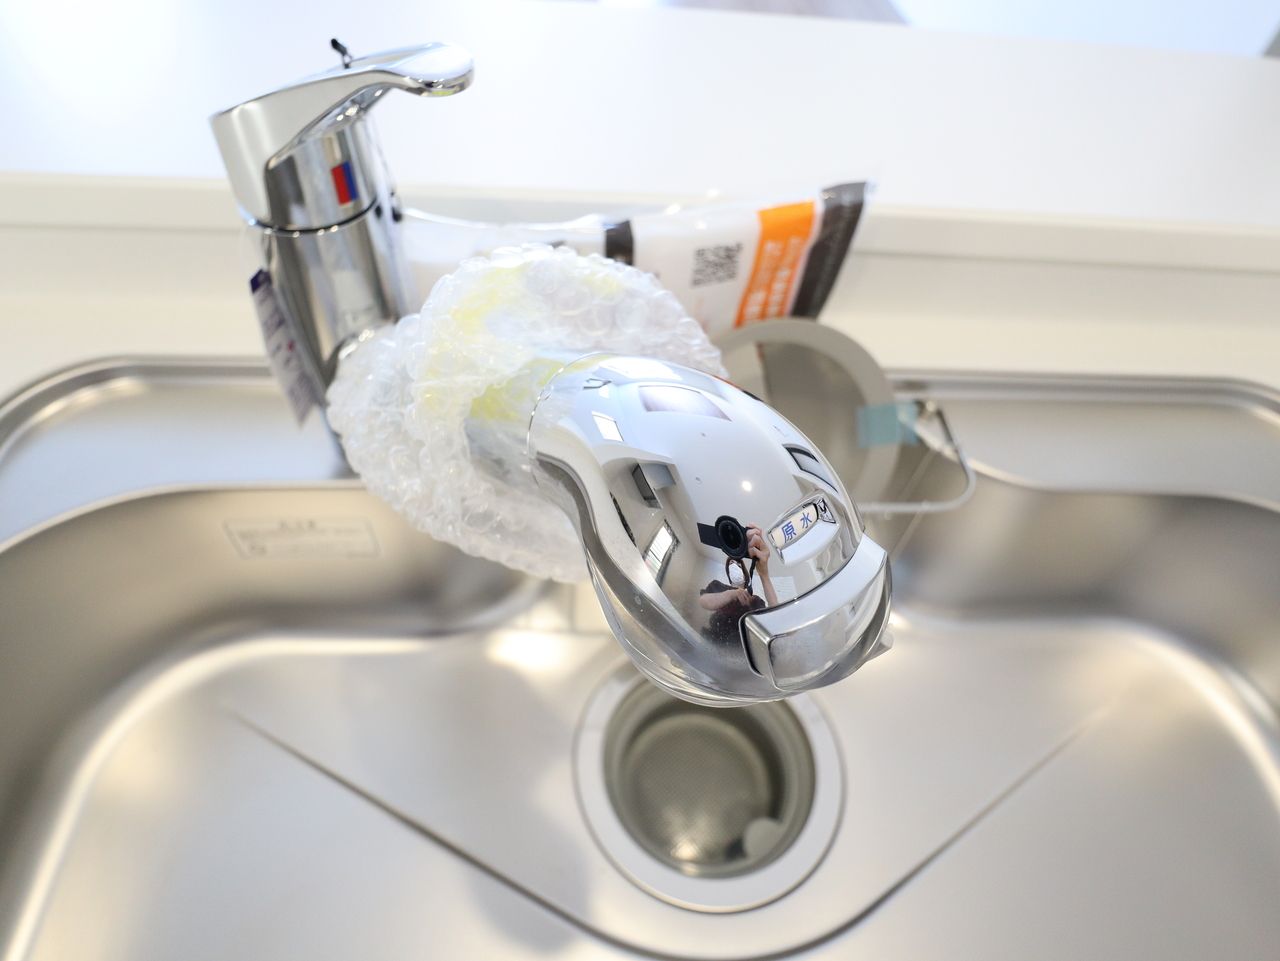 水栓にシャワーホースと浄水器をスリムに内蔵。シンクの隅々まで洗い流せ、大きな鍋を洗うときにも便利です。プッシュボタンで浄水器の切り替えも簡単です。